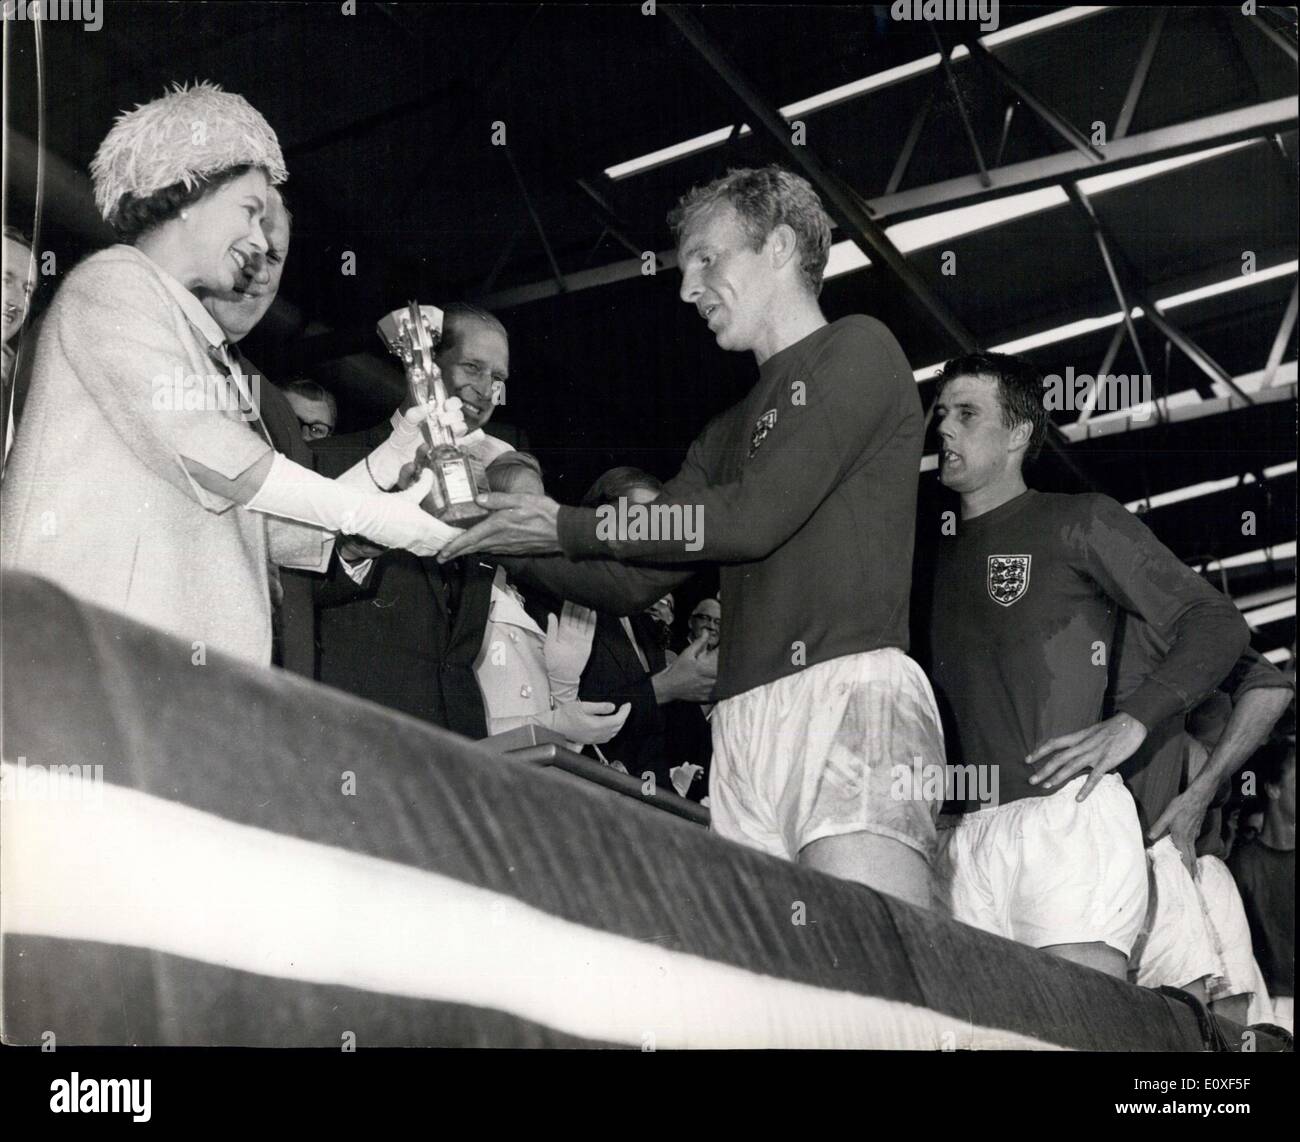 Juillet 30, 1966 - Coupe du Monde de Football : l'Angleterre gagner la coupe du monde après avoir battu l'Allemagne de l'Ouest à Wembley. Photo montre Bobby Morre, Banque D'Images